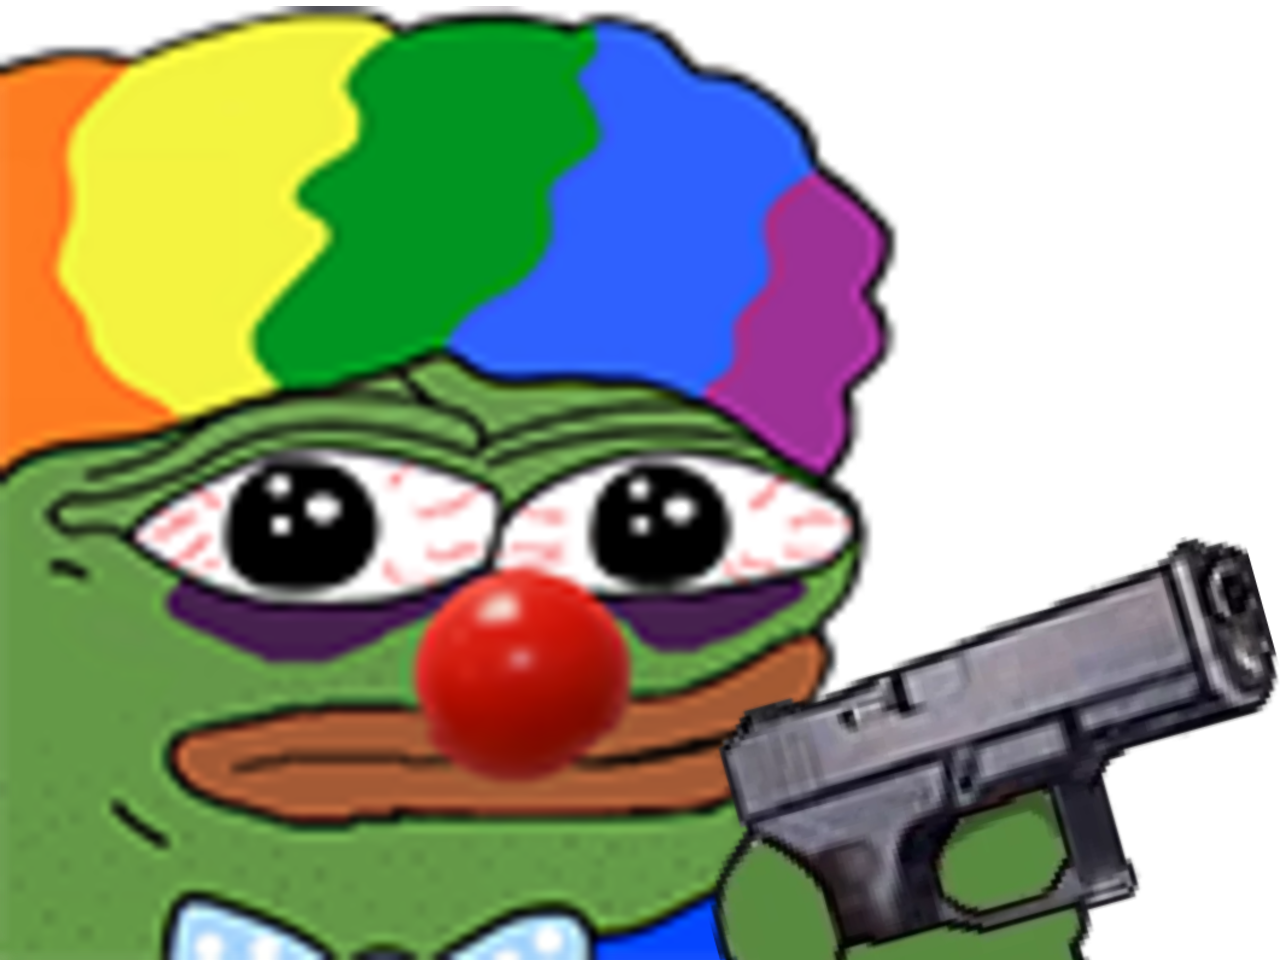 honk suicide honkler clown memes pepe meme cerne triste pistolet depressif sad tir other gun the nez depression frog perruque rouge